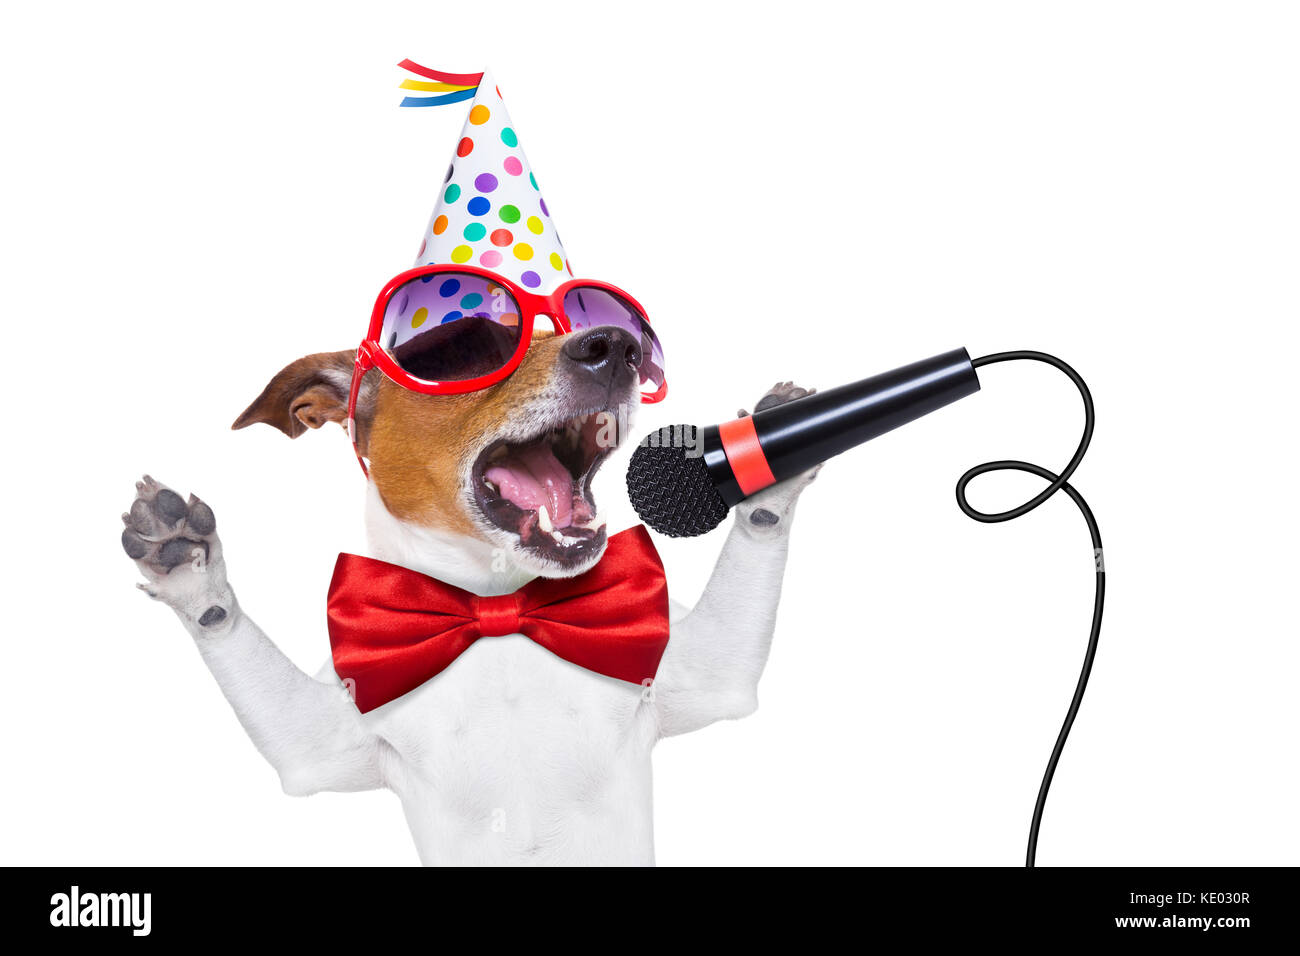 Jack Russell Hund als Überraschung, Gesang geburtstag Song wie Karaoke mit  Mikrofon tragen rote Krawatte und Hut, auf weißem Hintergrund  Stockfotografie - Alamy